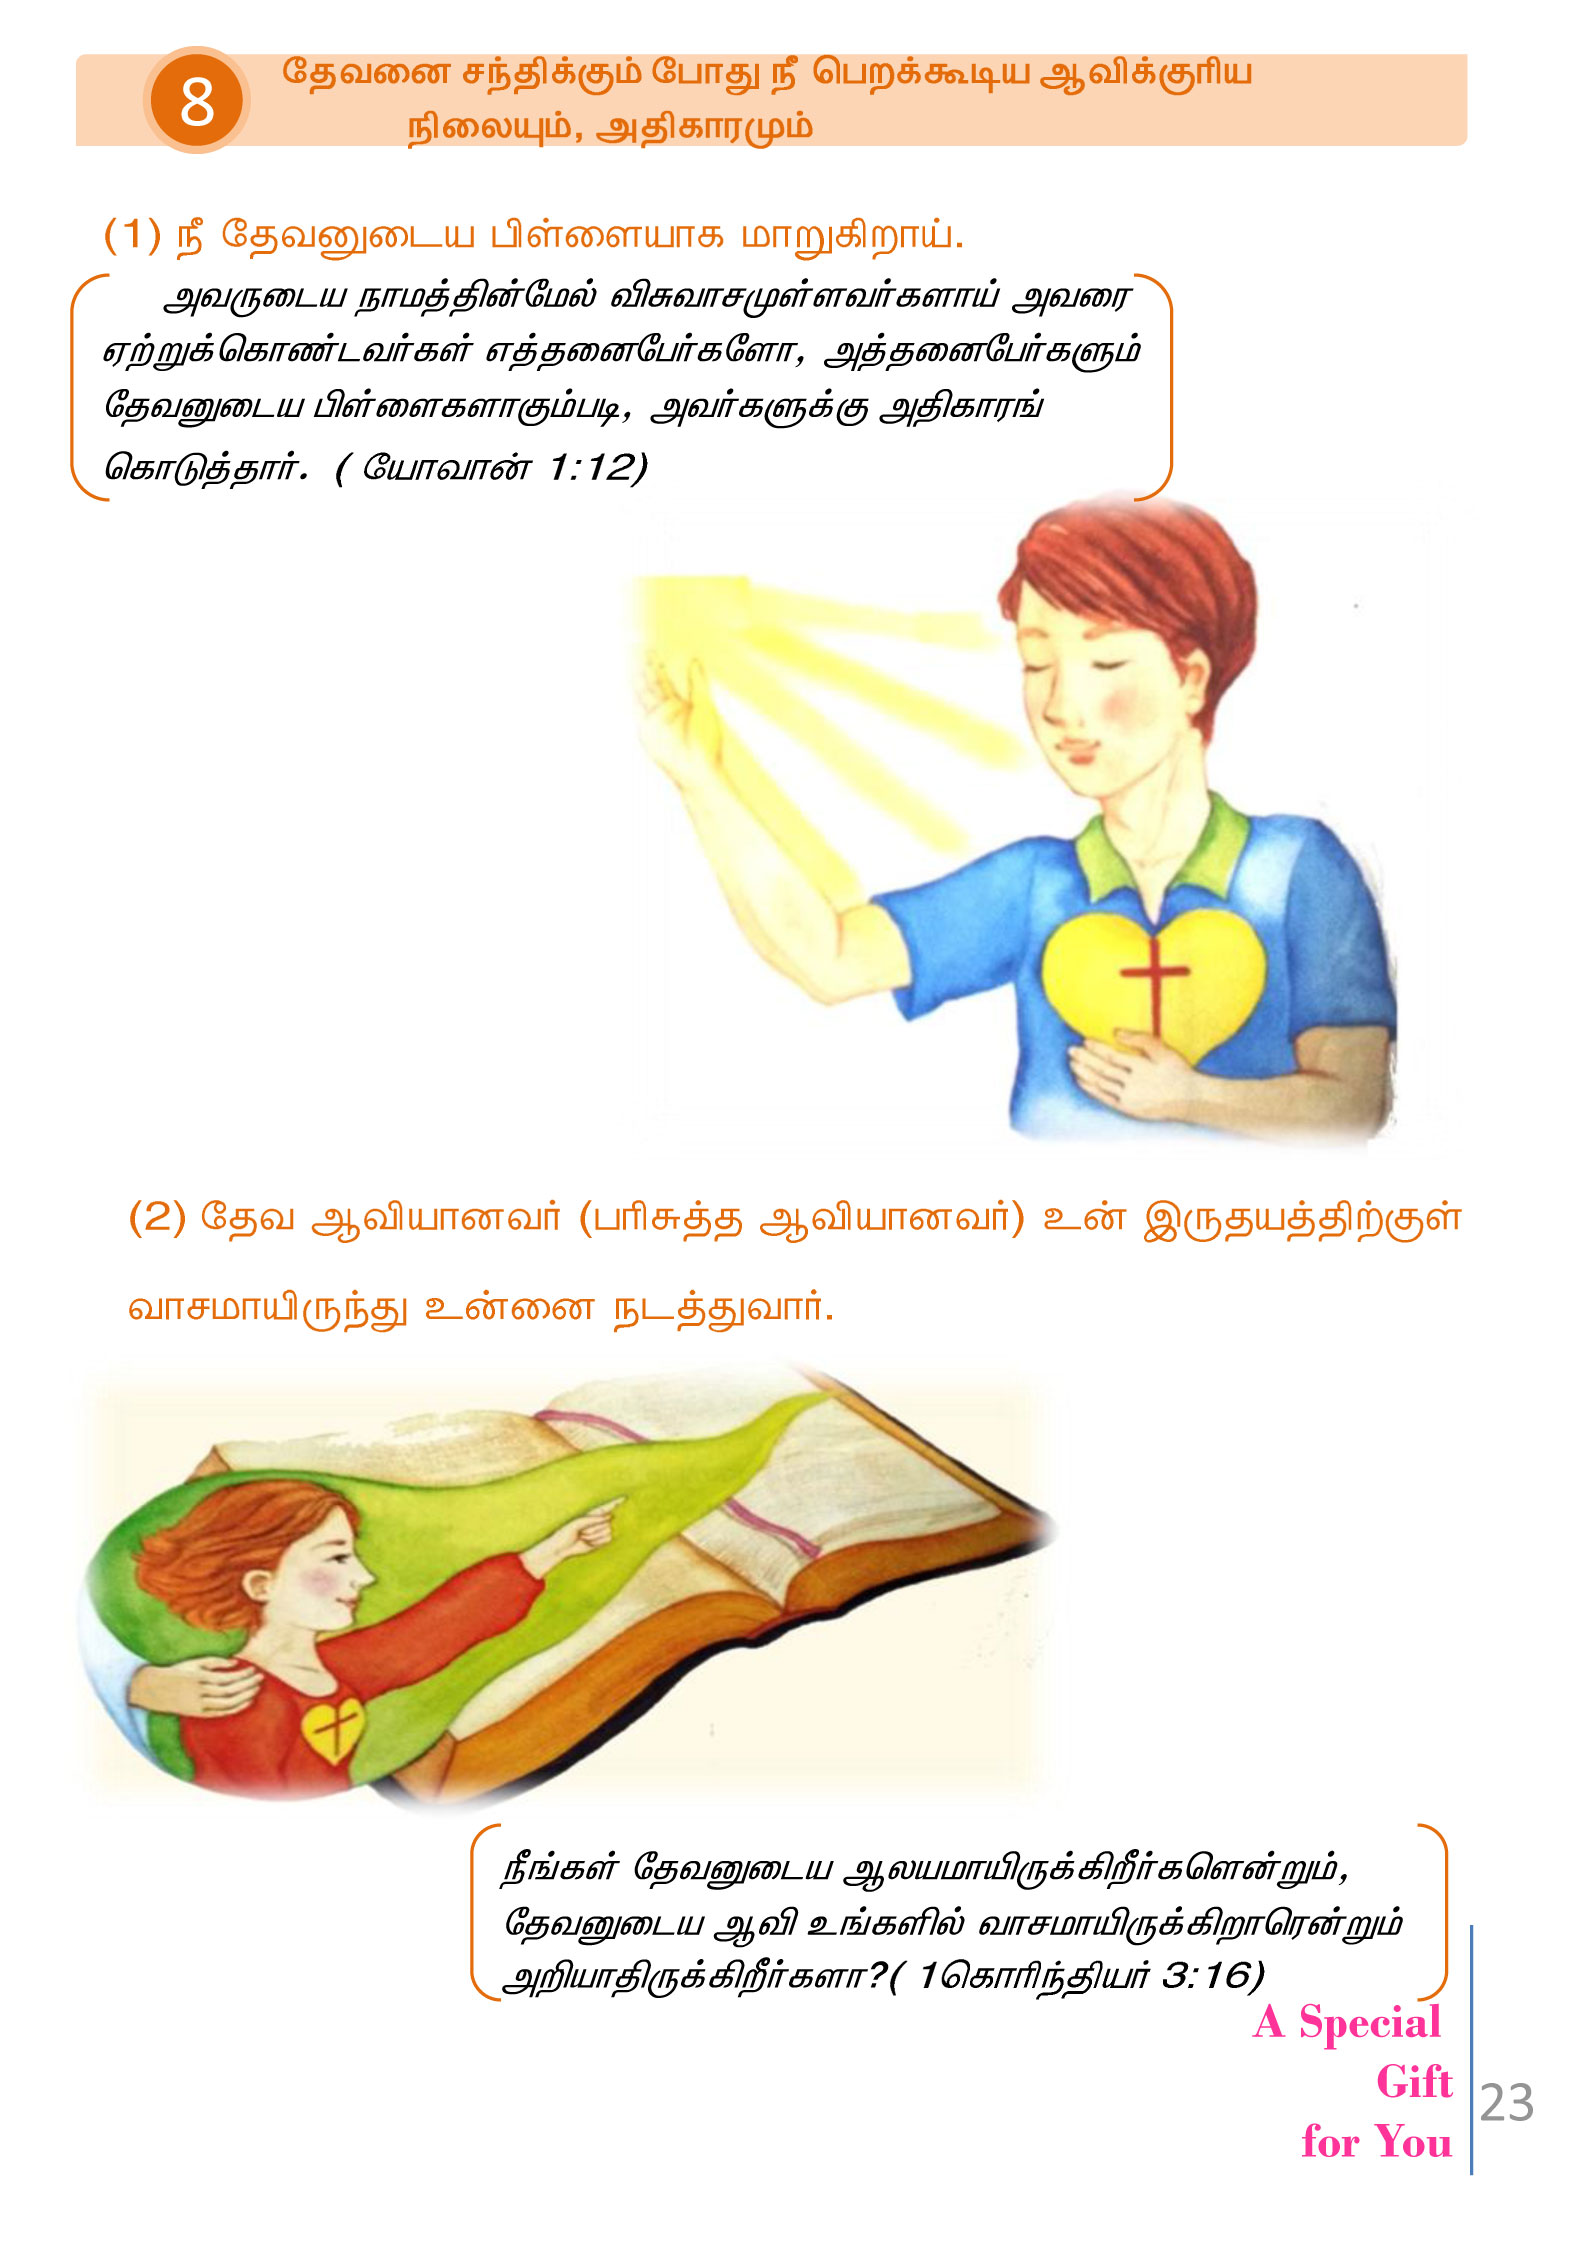 Tamil-Evangelism-Book-Pdf-3-23.jpg